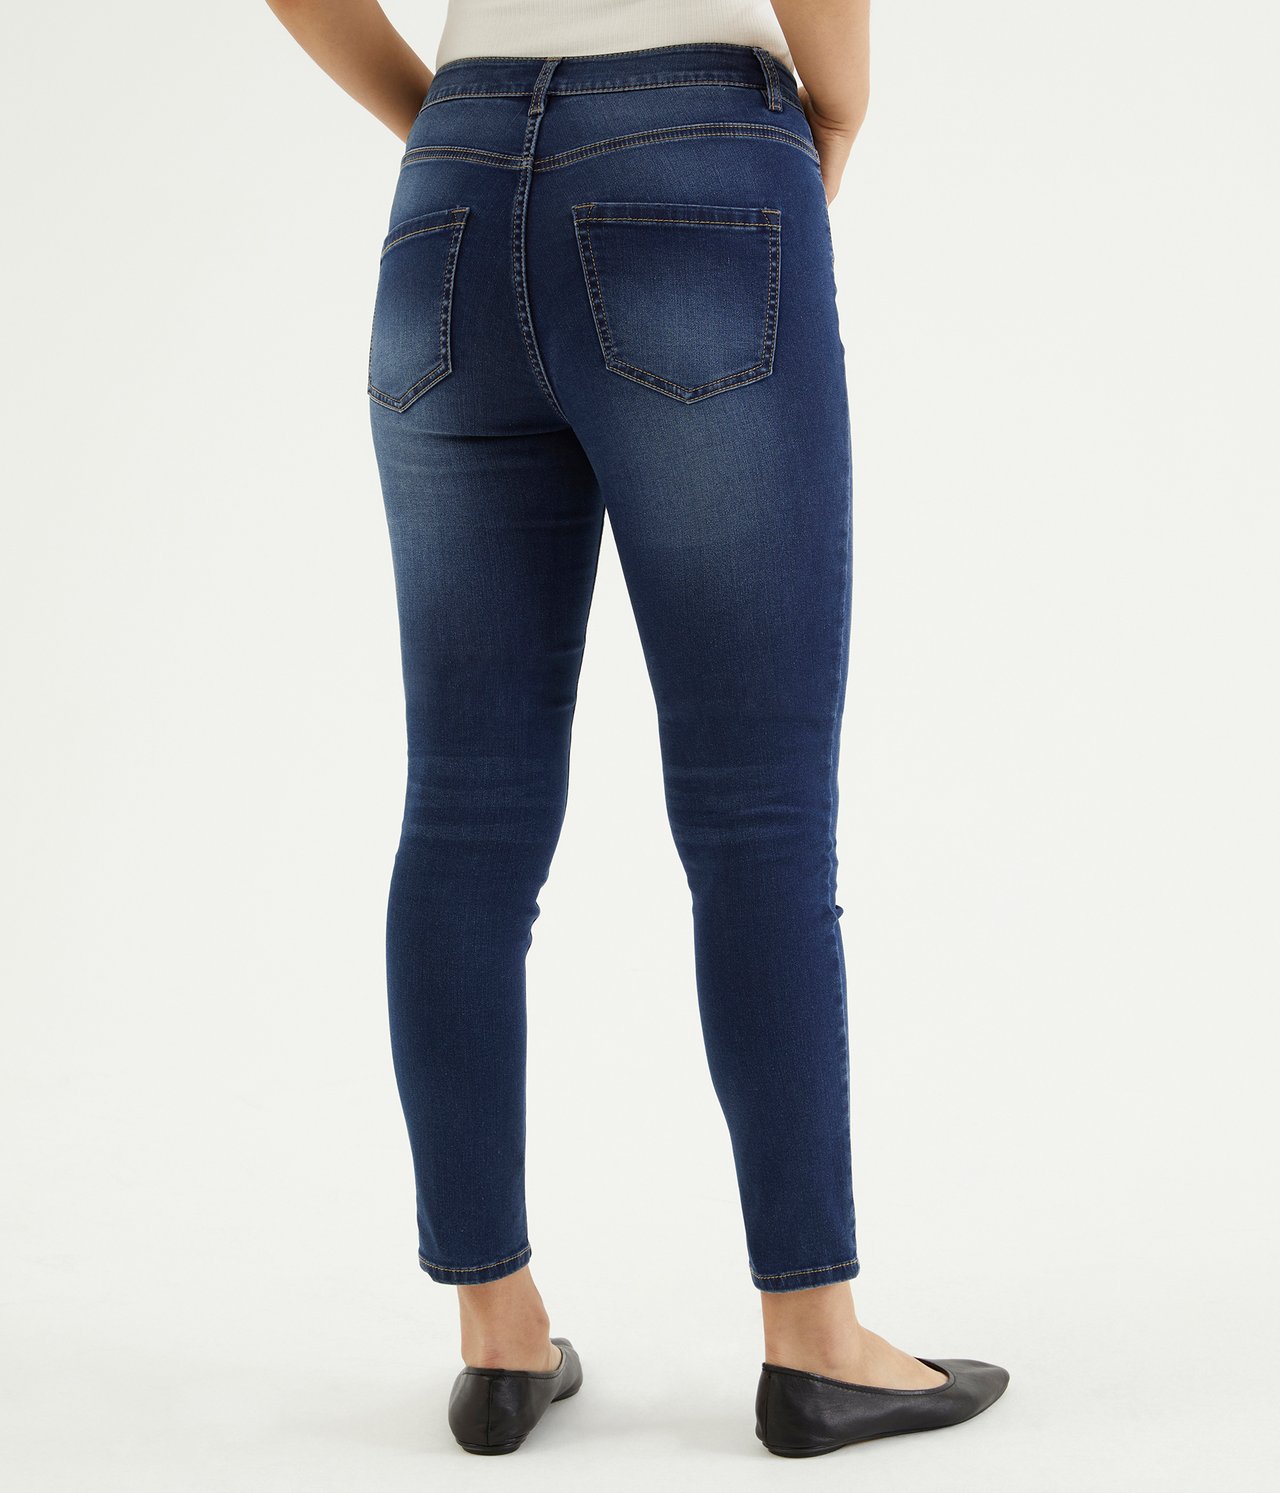 Super slim jeans short leg - Mørk denim - 4